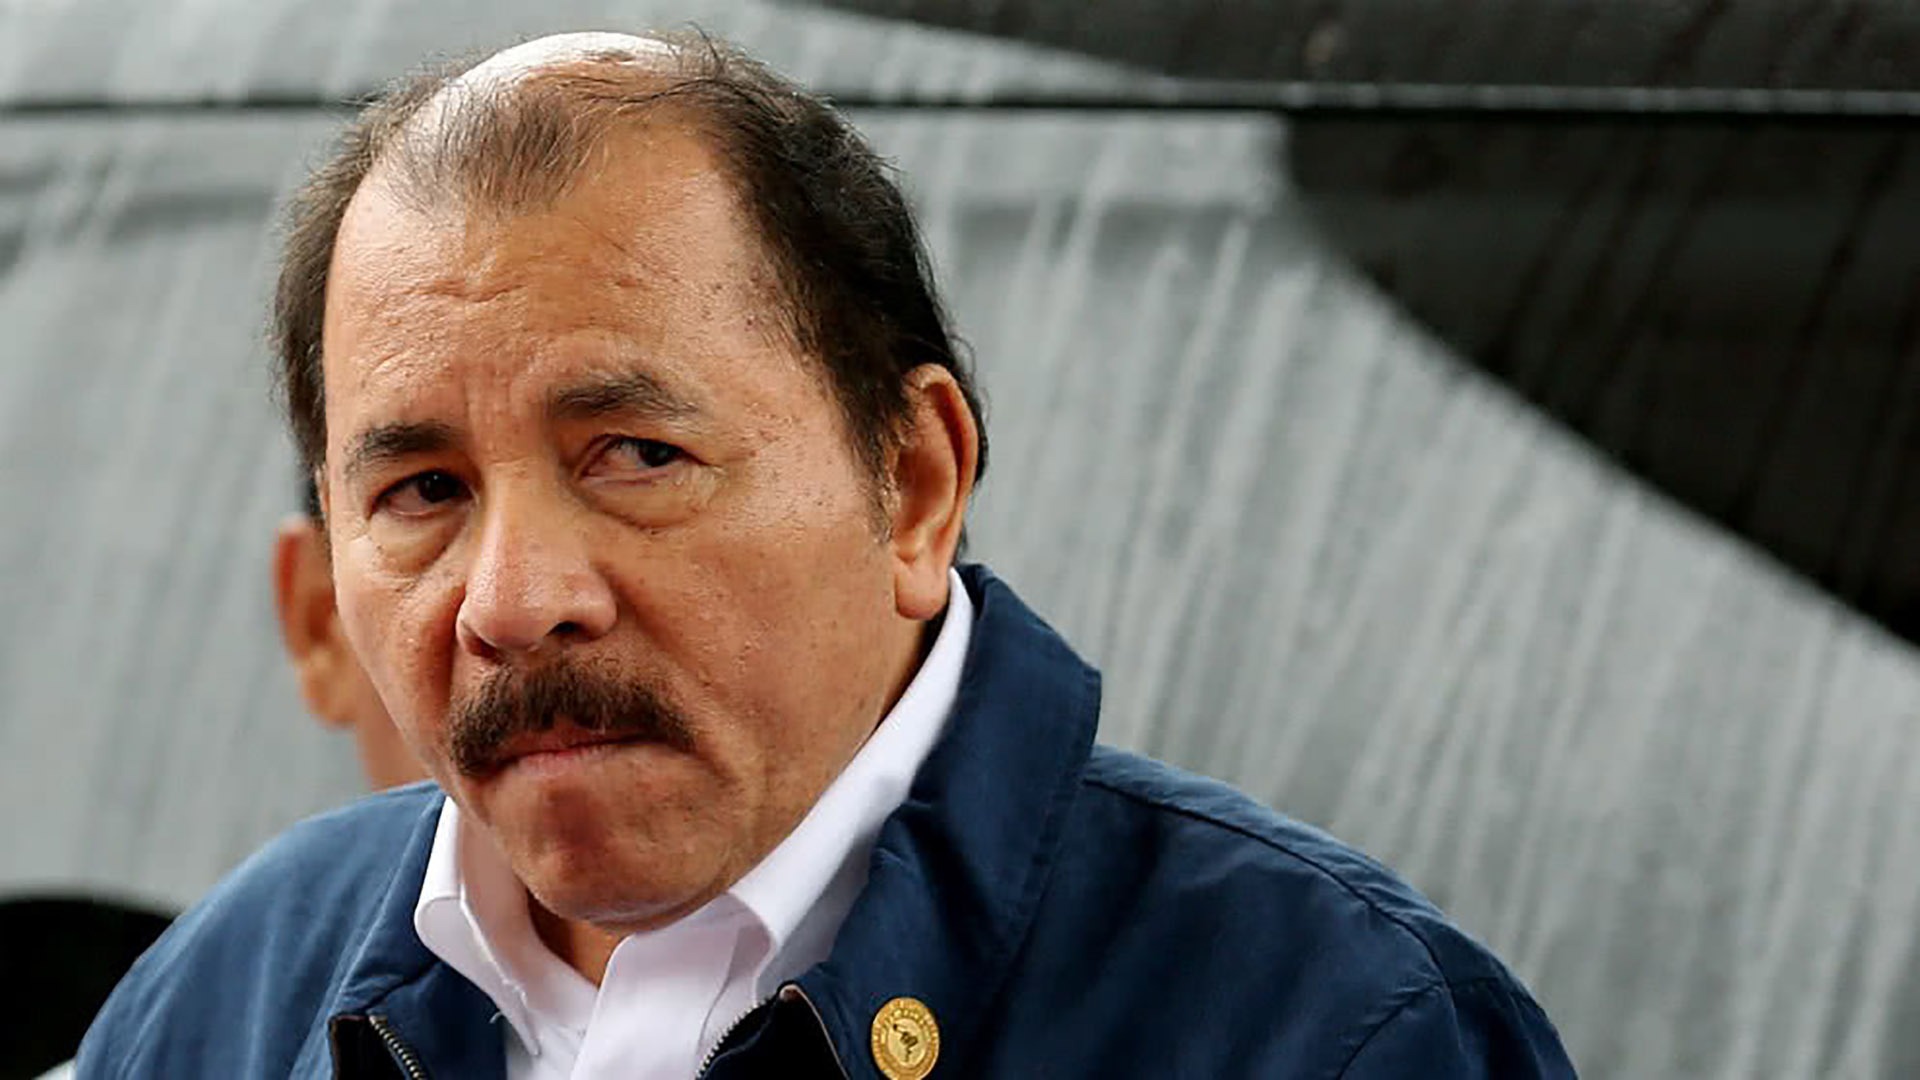 Daniel Ortega garantiza el poder por división opositora, sin elecciones libres y lealtad de las